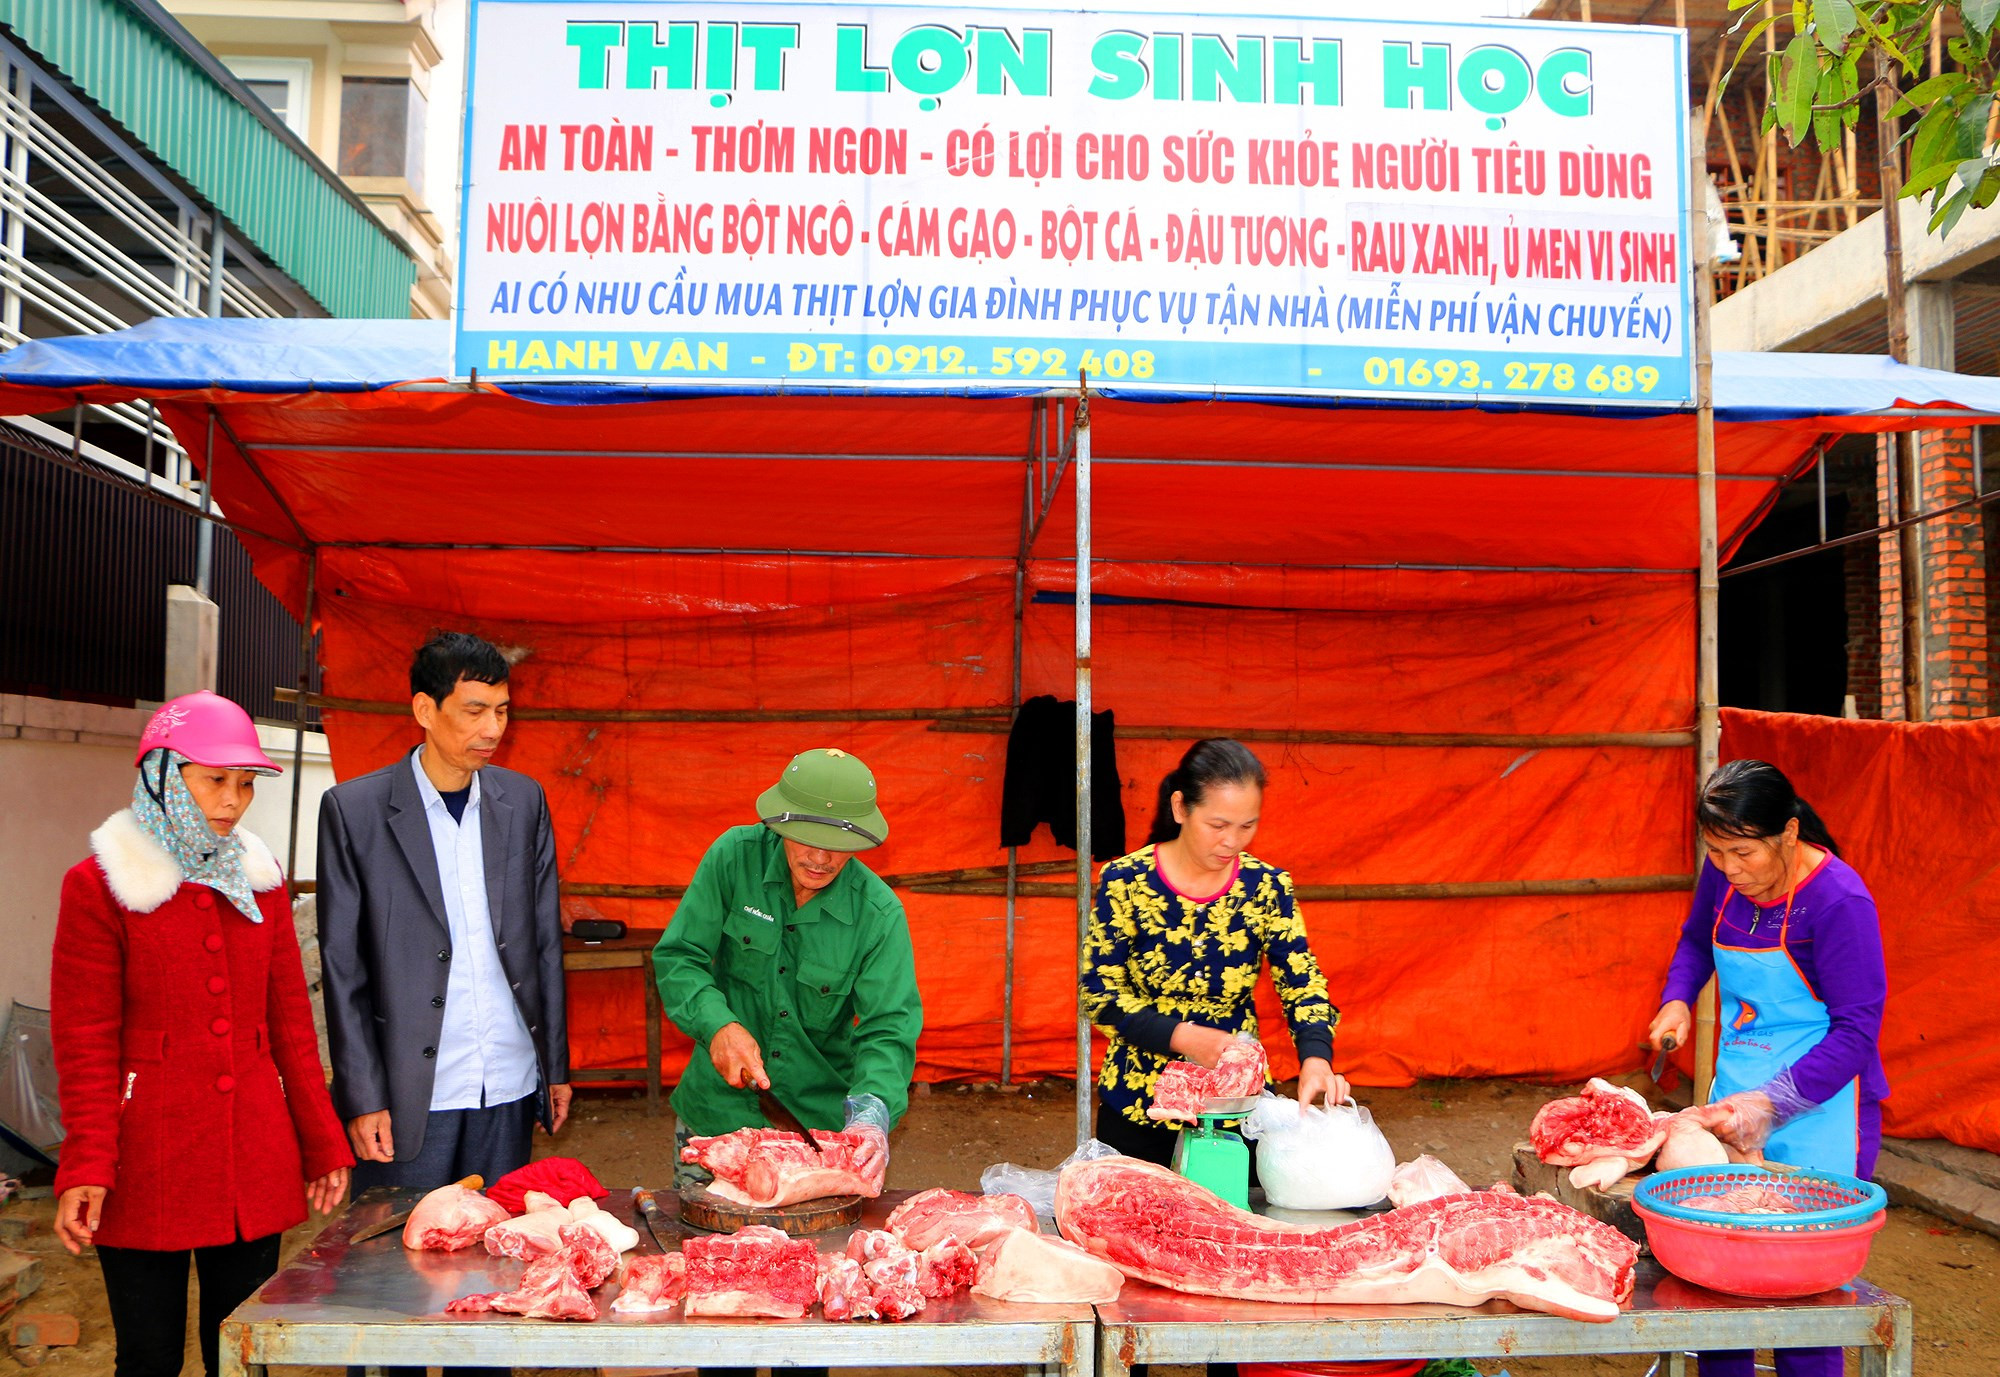 Quầy giới thiệu và bán sản phẩm thịt lợn sạch của gia đình ông Phùng Đức Hạnh mang tên Hạnh Vân ngay trước Cổng phụ chợ Cửa Lò. Ảnh: Hà Phương